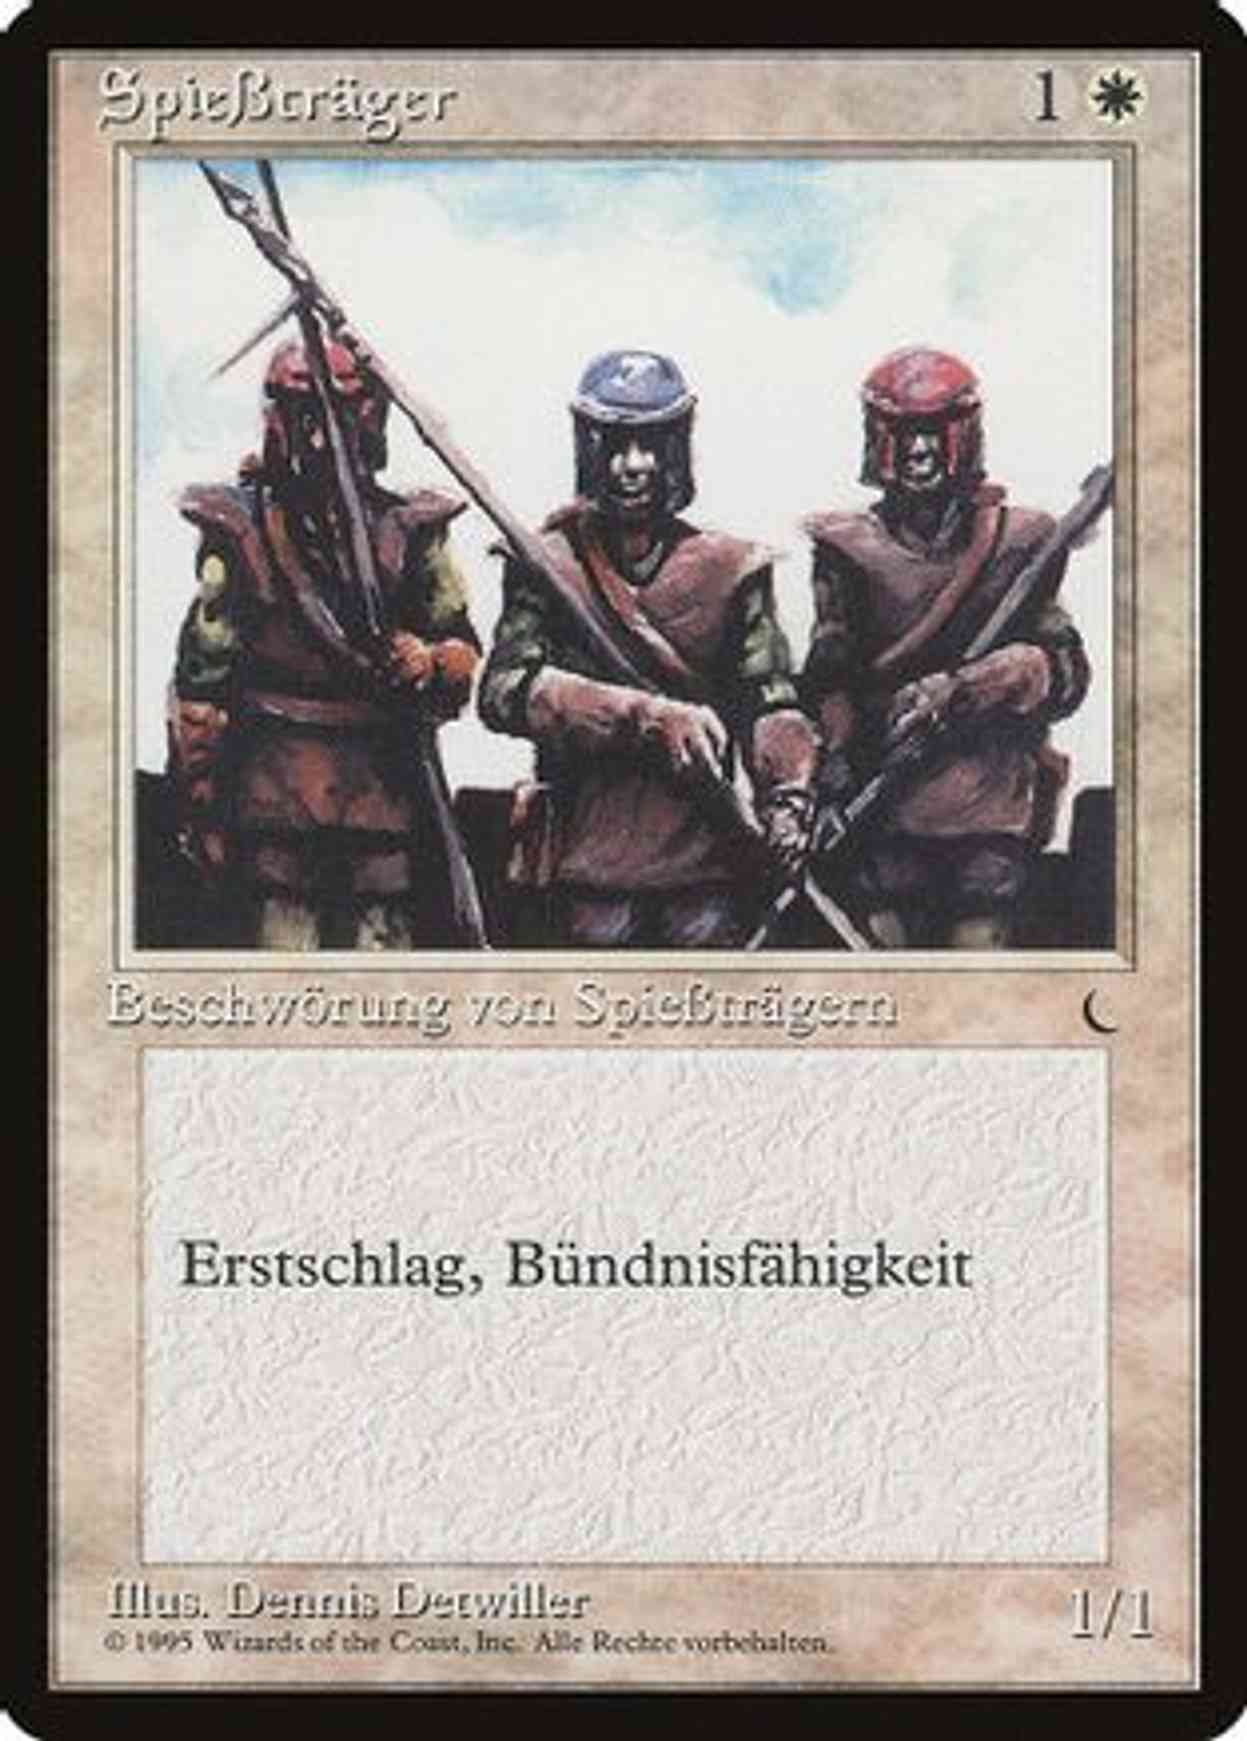 Pikemen (German) - "Spießtrager" magic card front